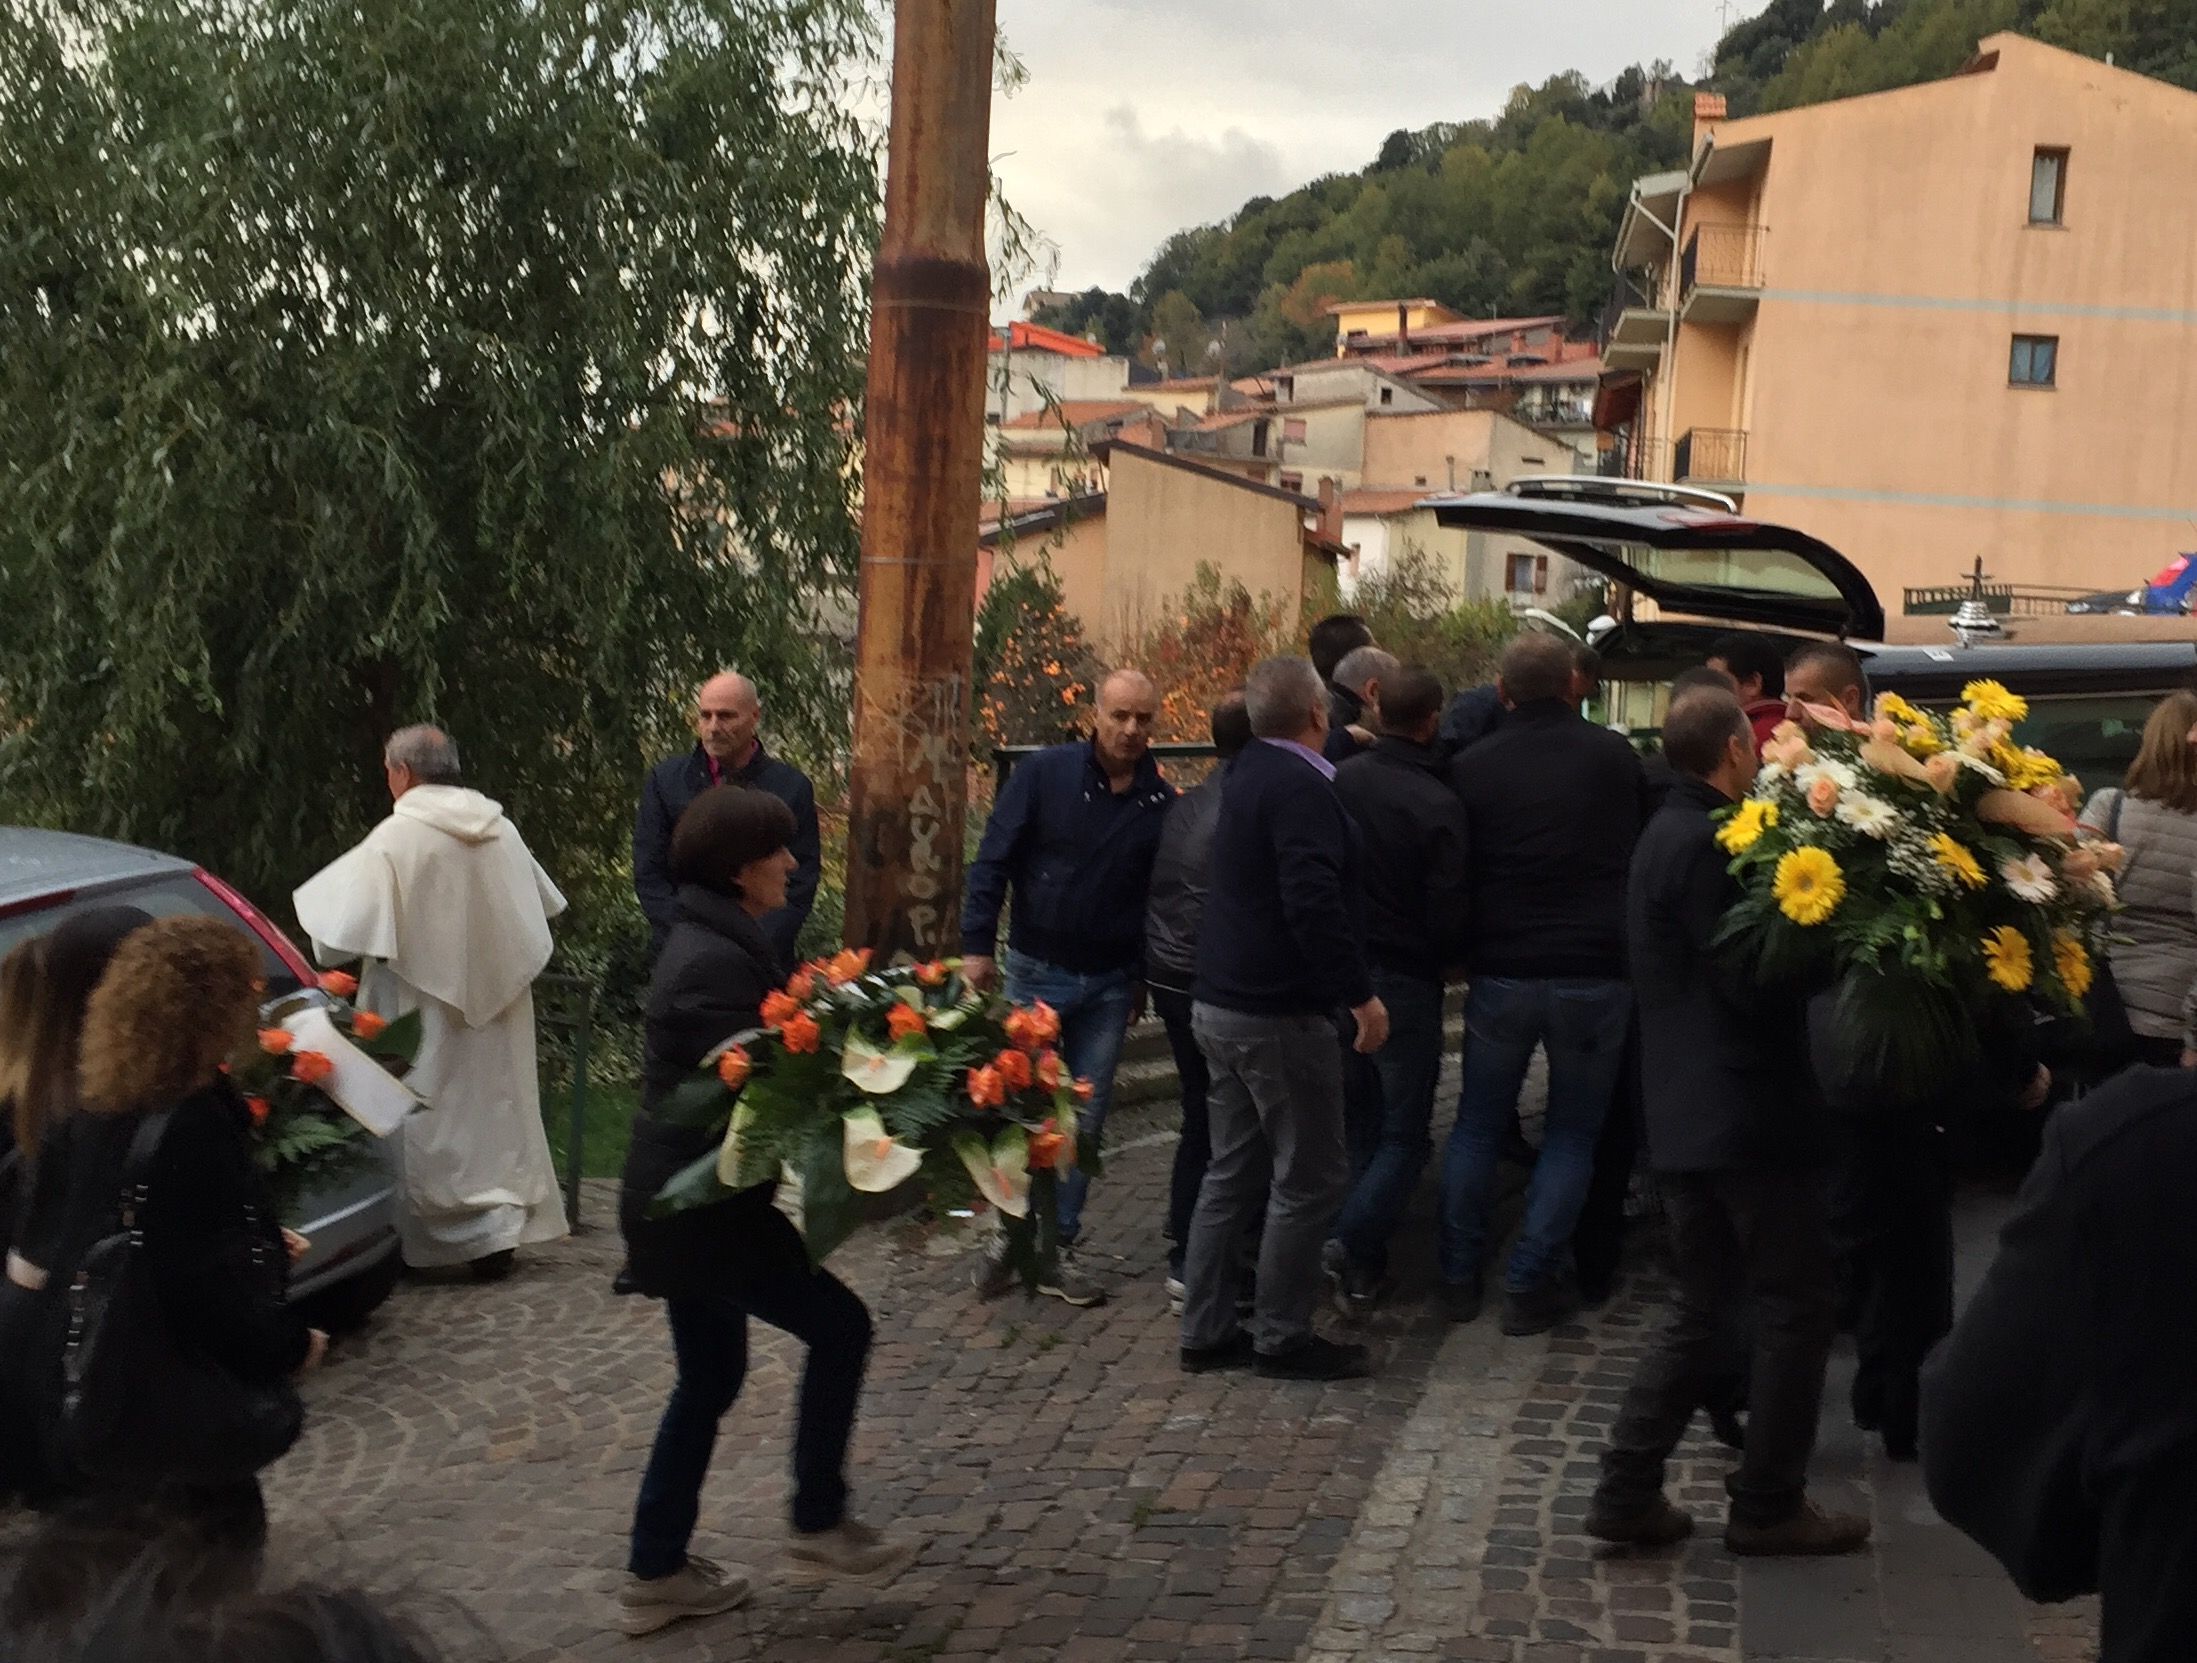 L'addio ad Antonio Floris. Il parroco ai funerali del detenuto assassinato a Padova: «Cercava la sua salvezza» 